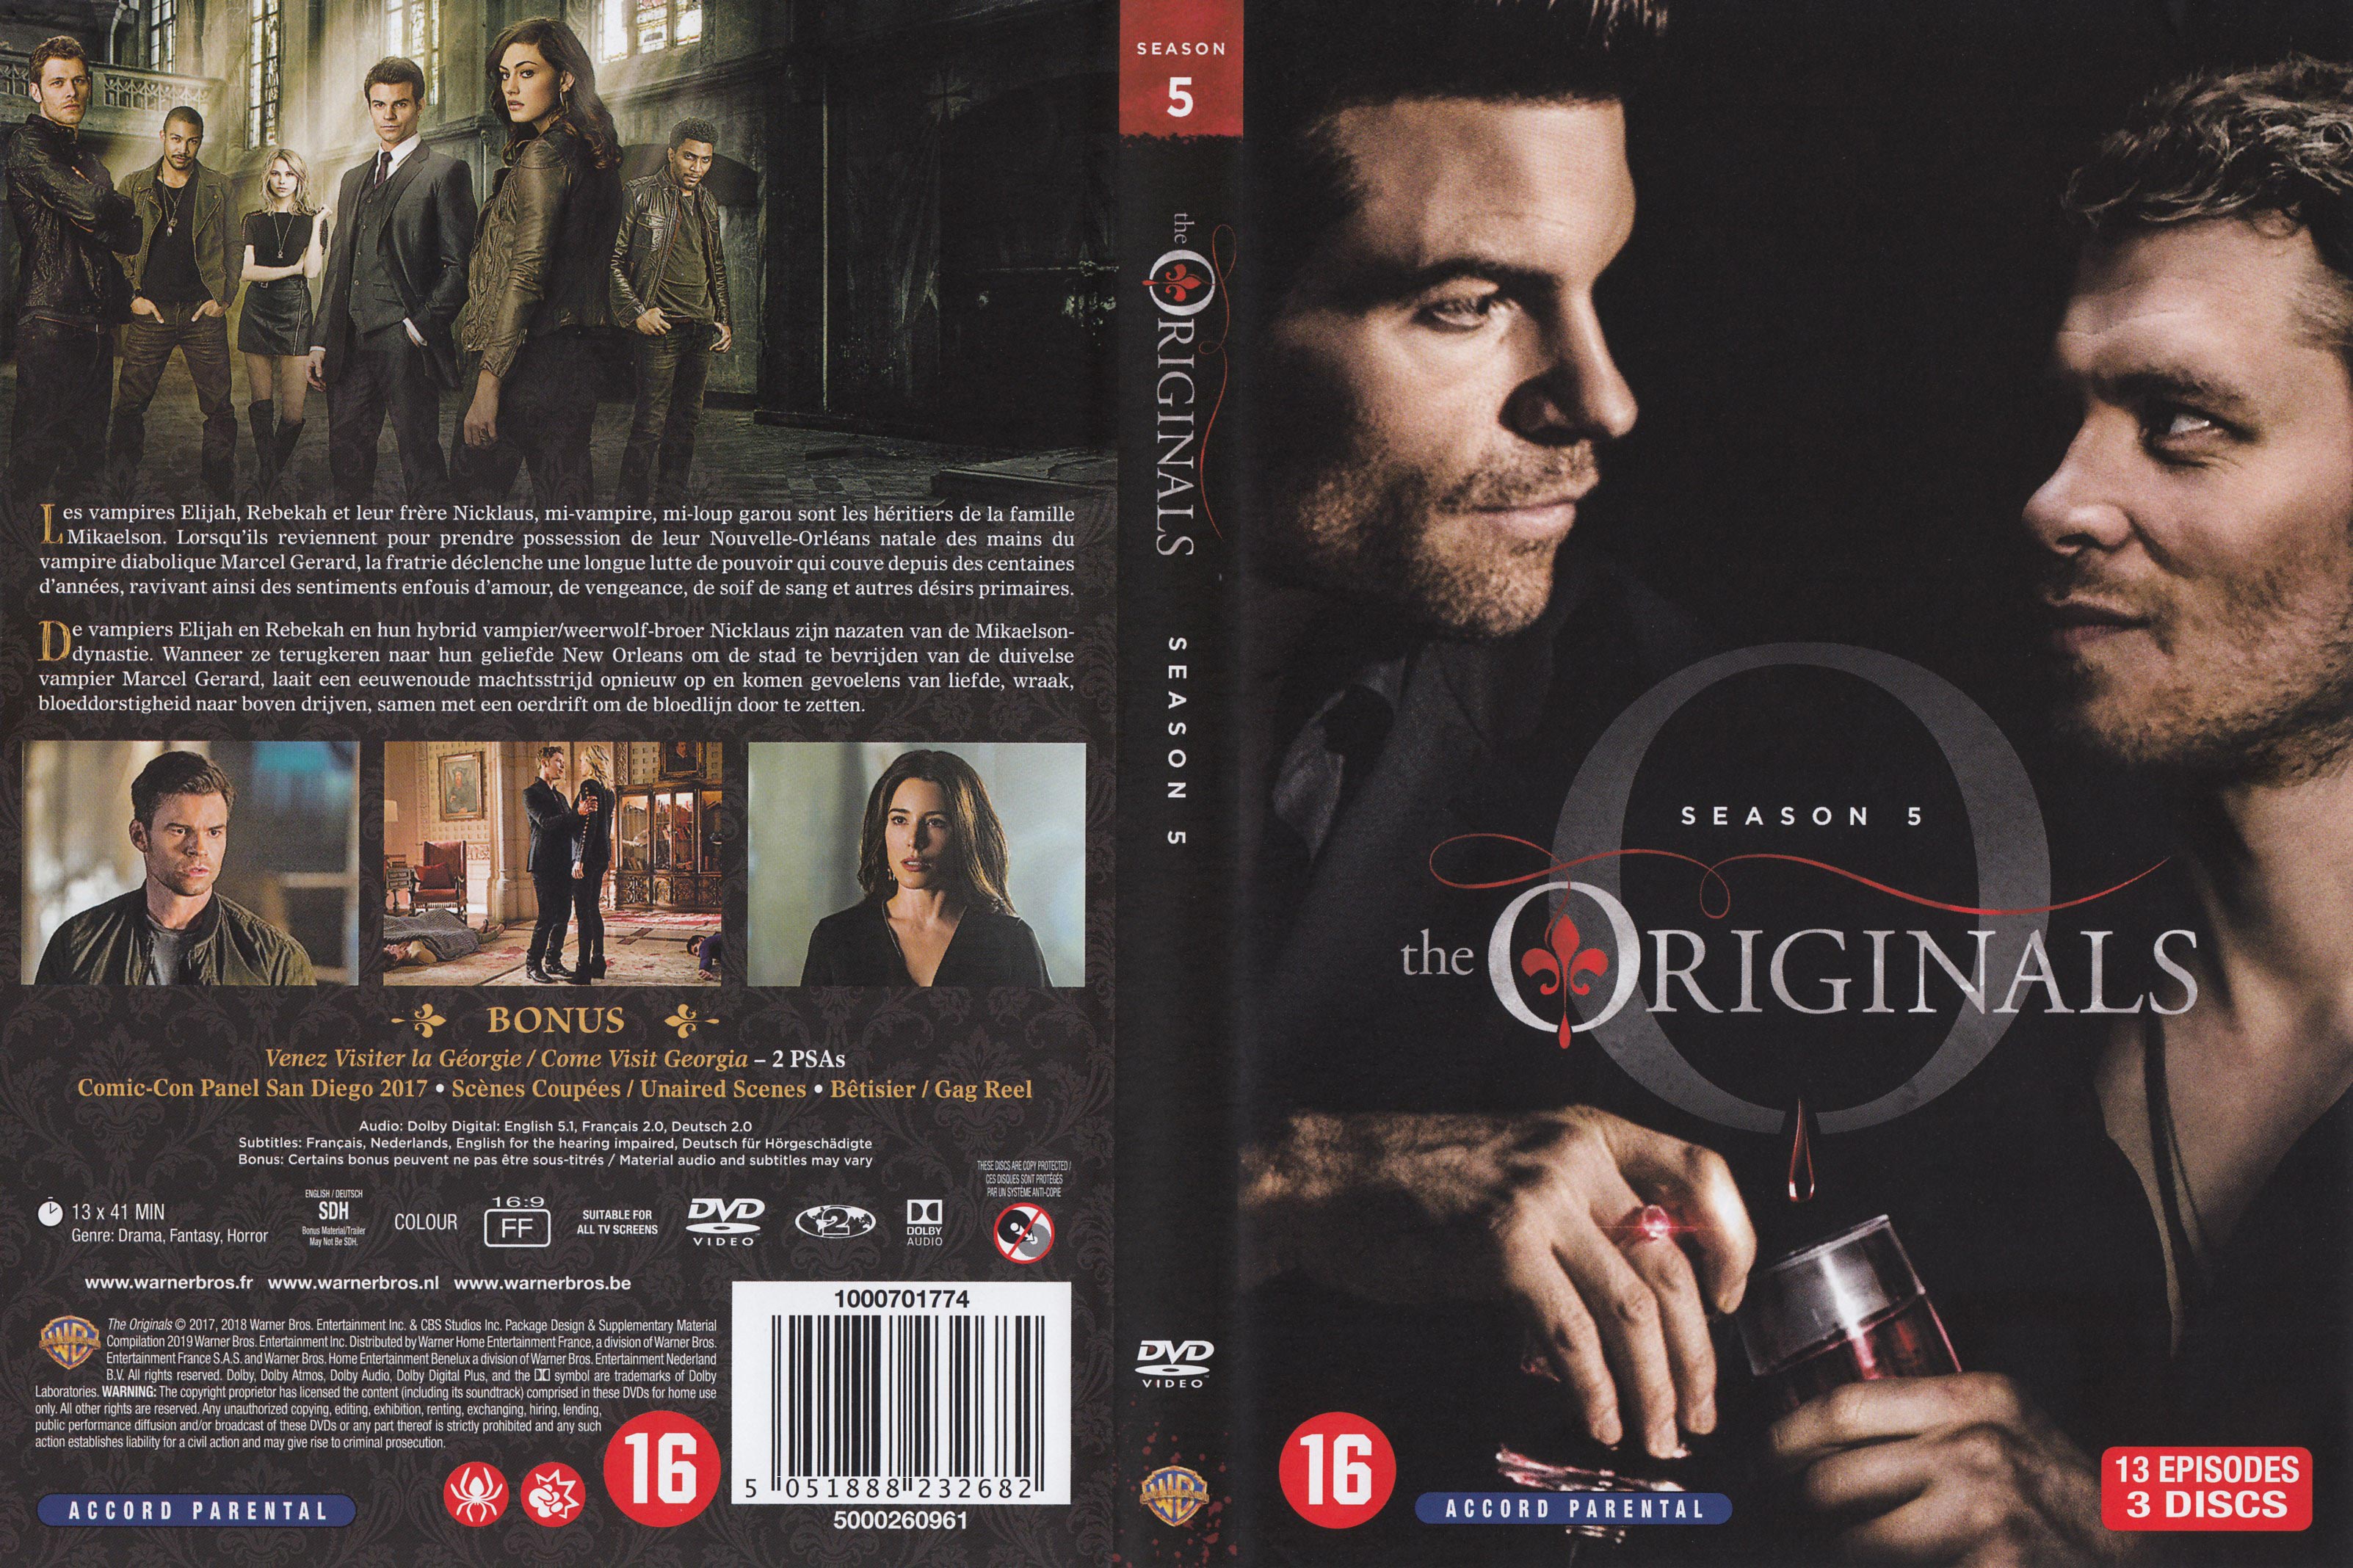 Jaquette DVD The originals Saison 5